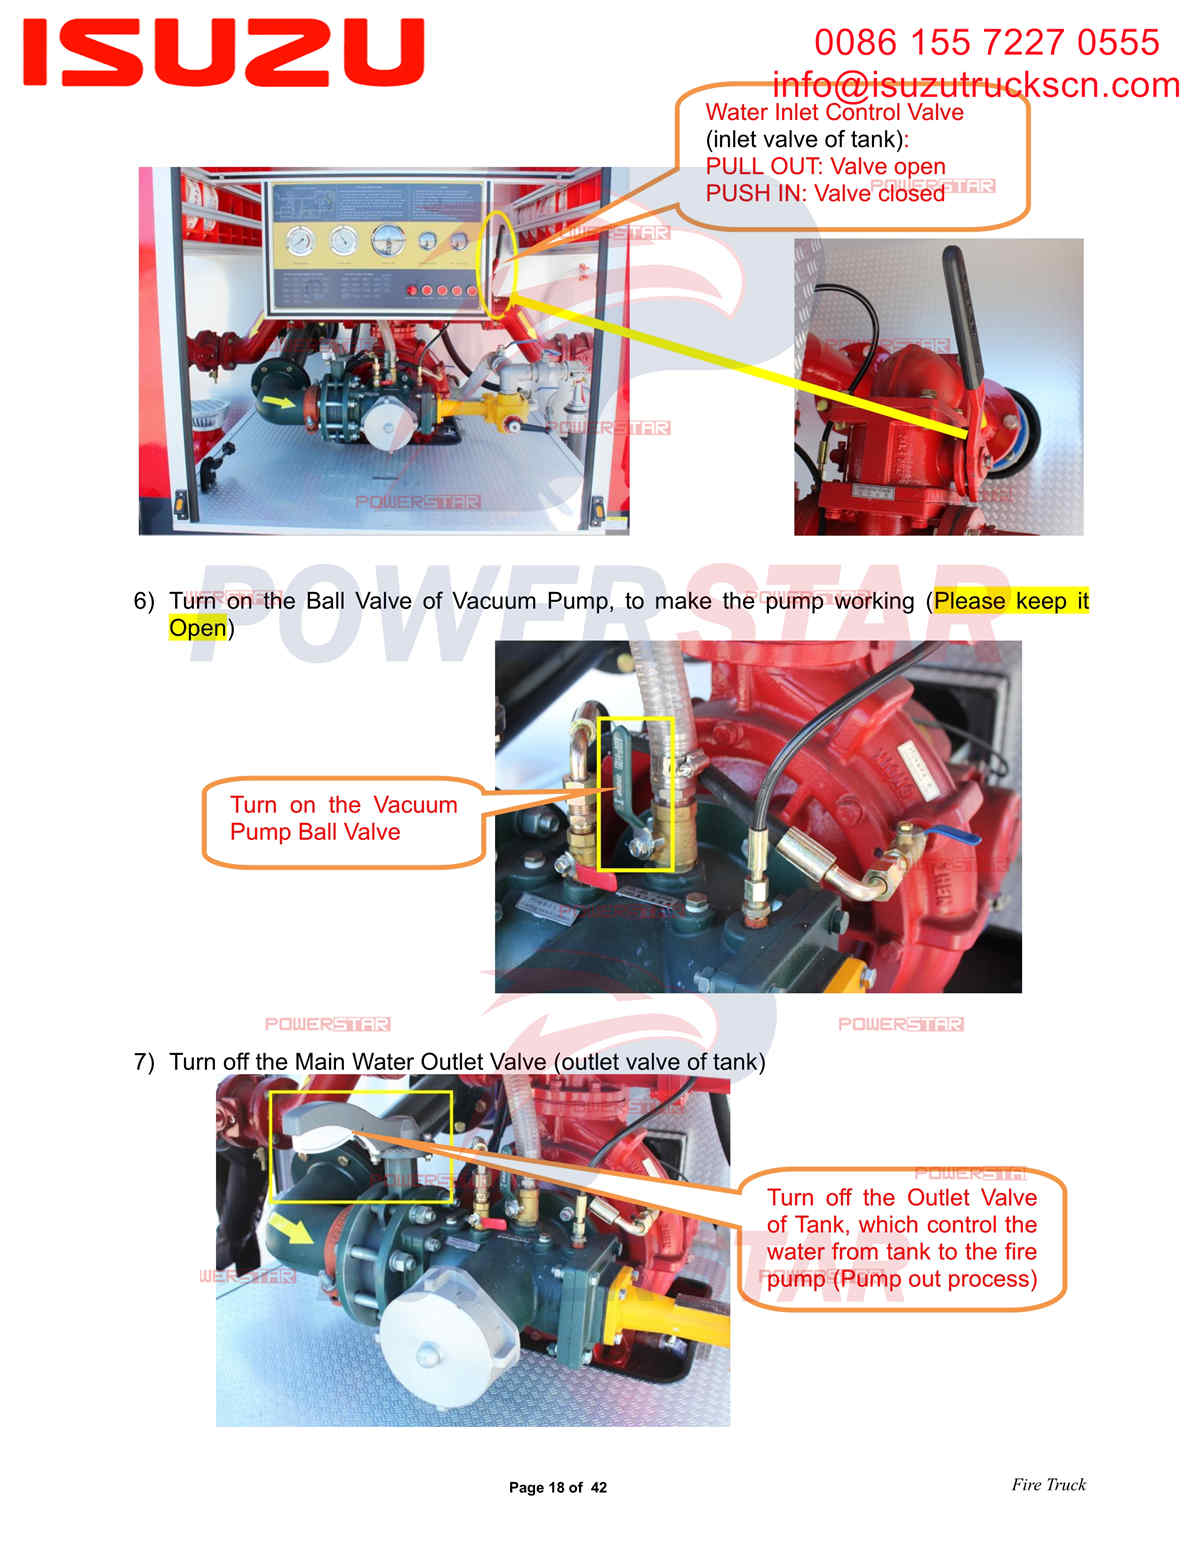 Exportación de camiones de bomberos de agua y espuma POWERSTAR ISUZU ELF a Dubai